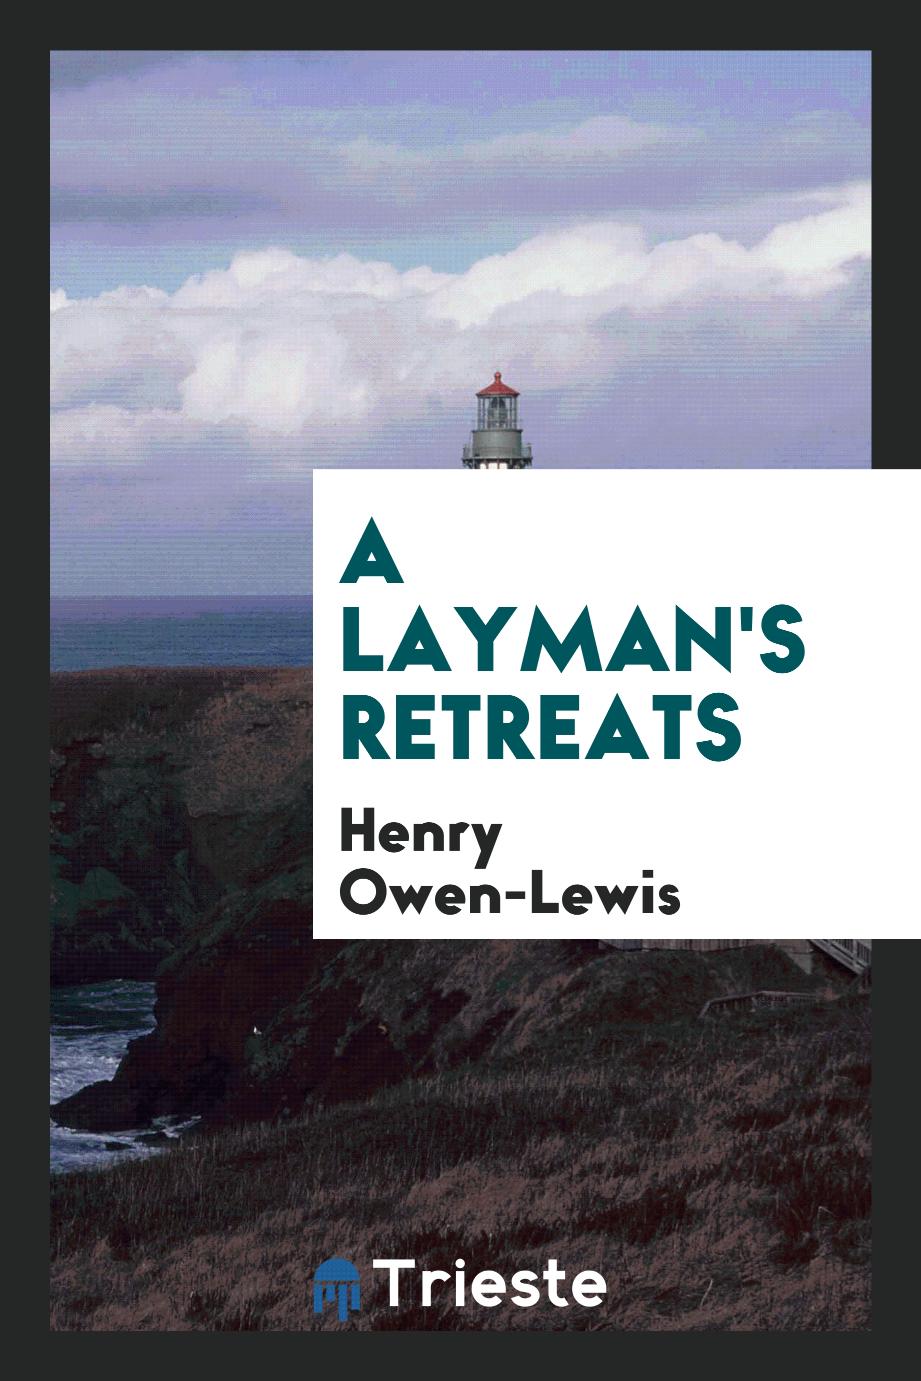 A layman's retreats